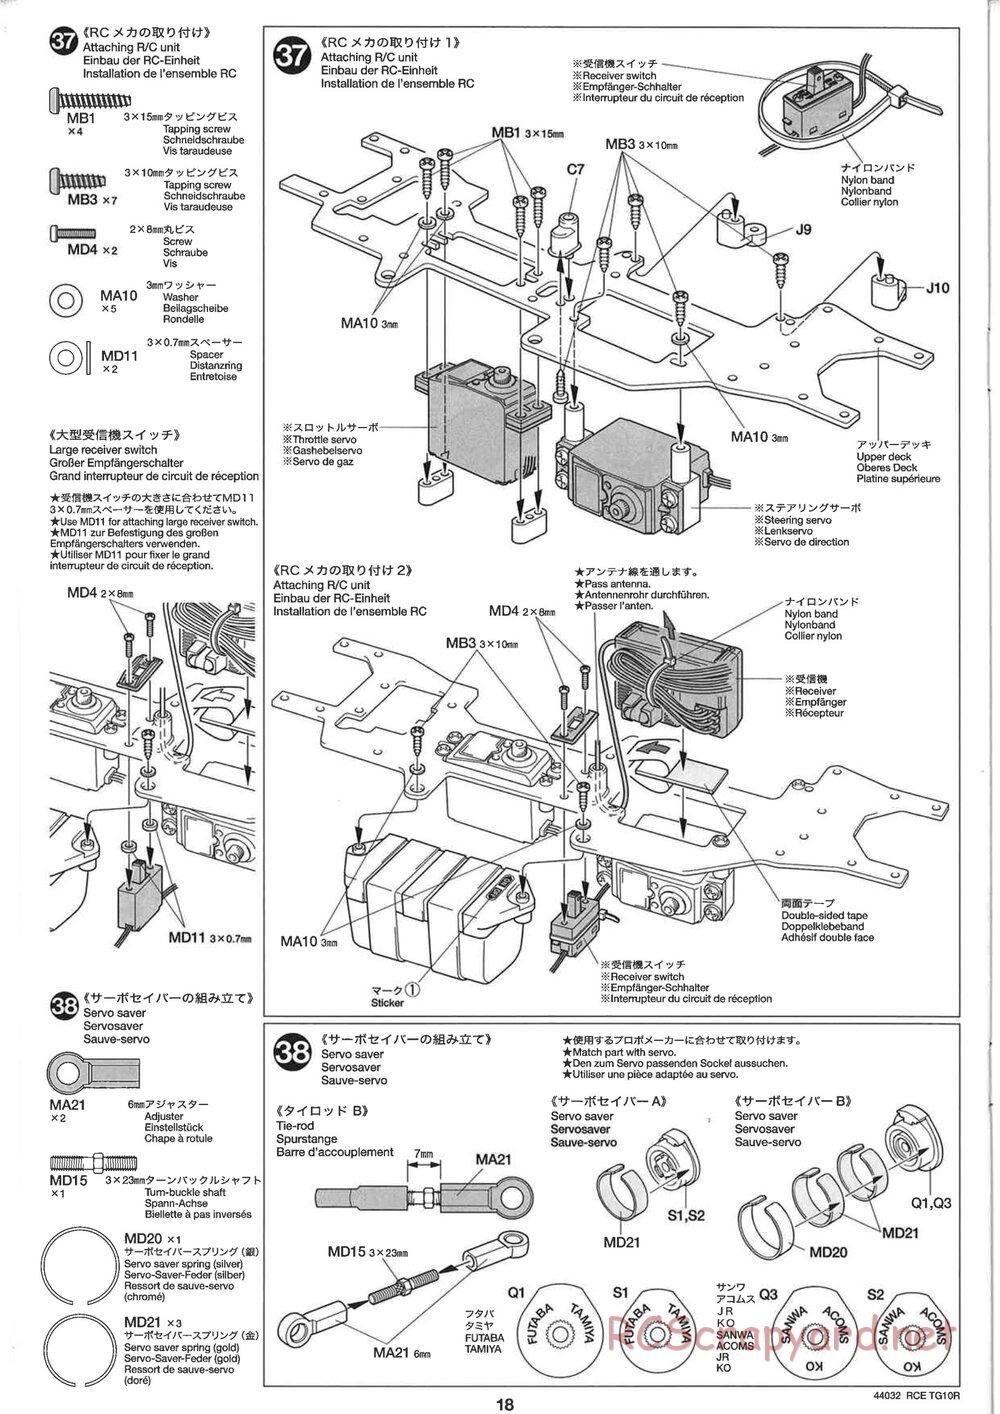 Tamiya - TG10R Chassis - Manual - Page 18